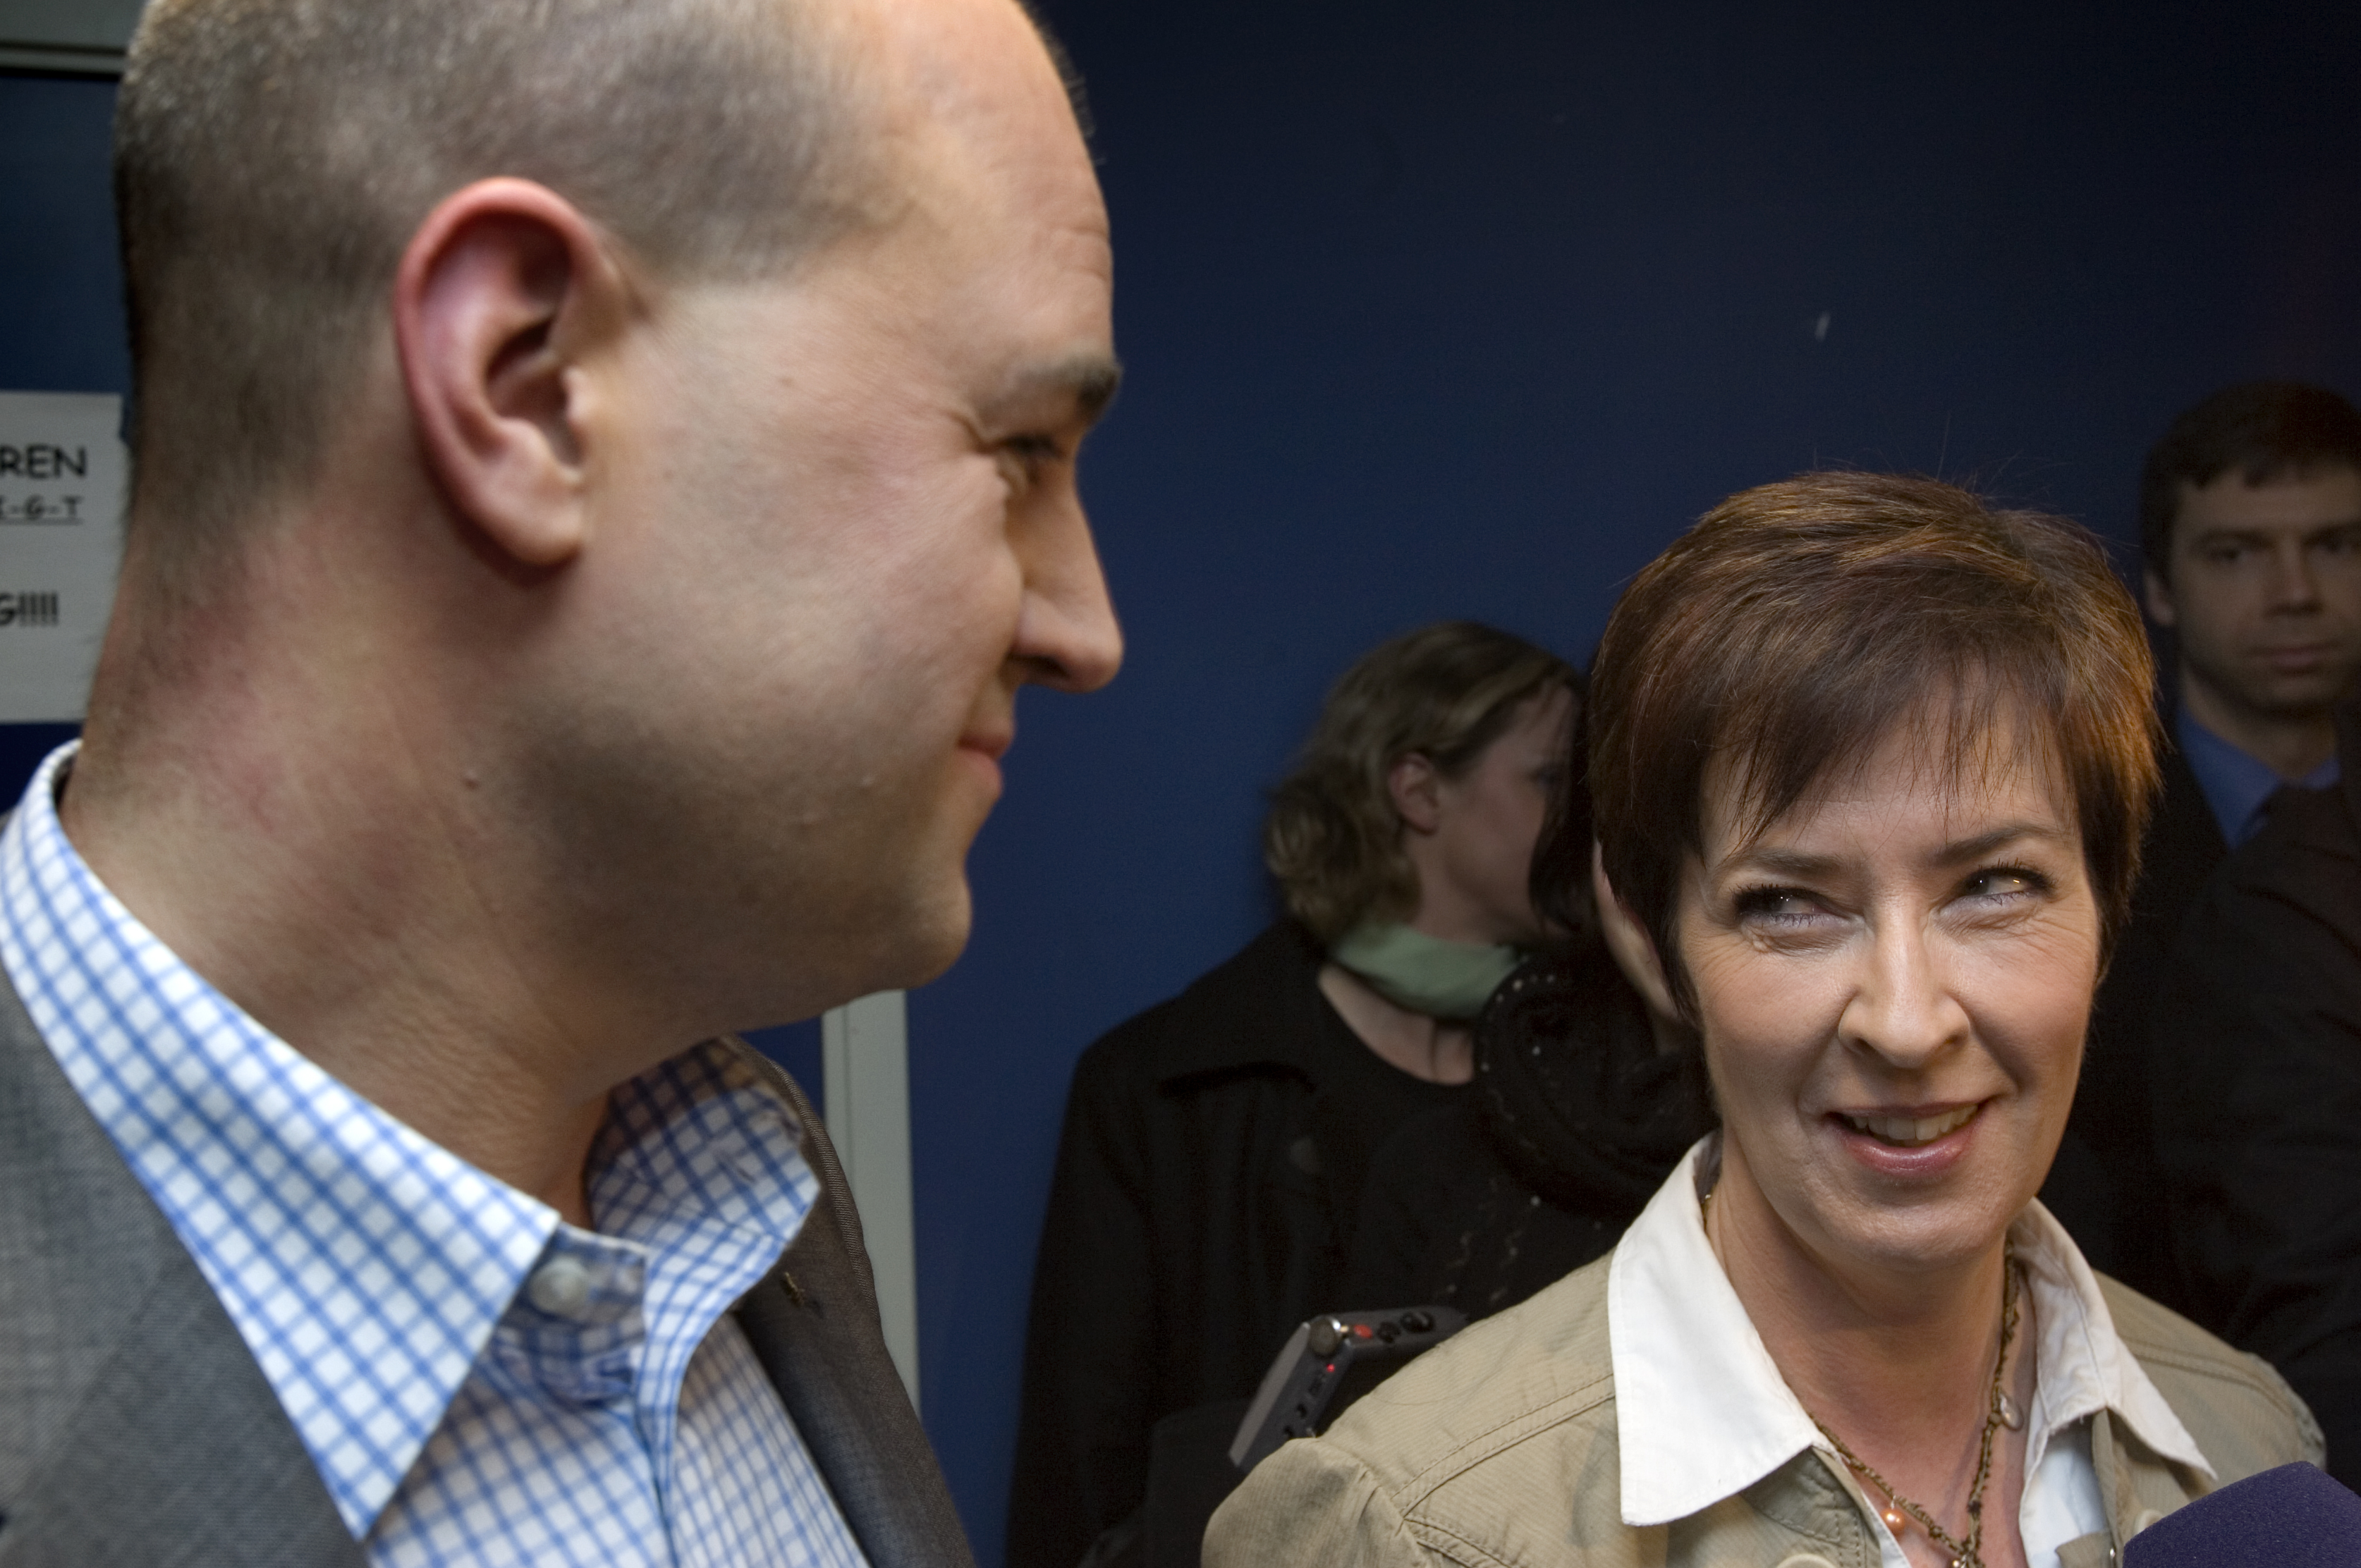 Om väljarna får välja fortsätter Reinfeldt som statminister. Sahlin stöds bara av 16 procent av de tillfrågade i ny Sifoundersökning.